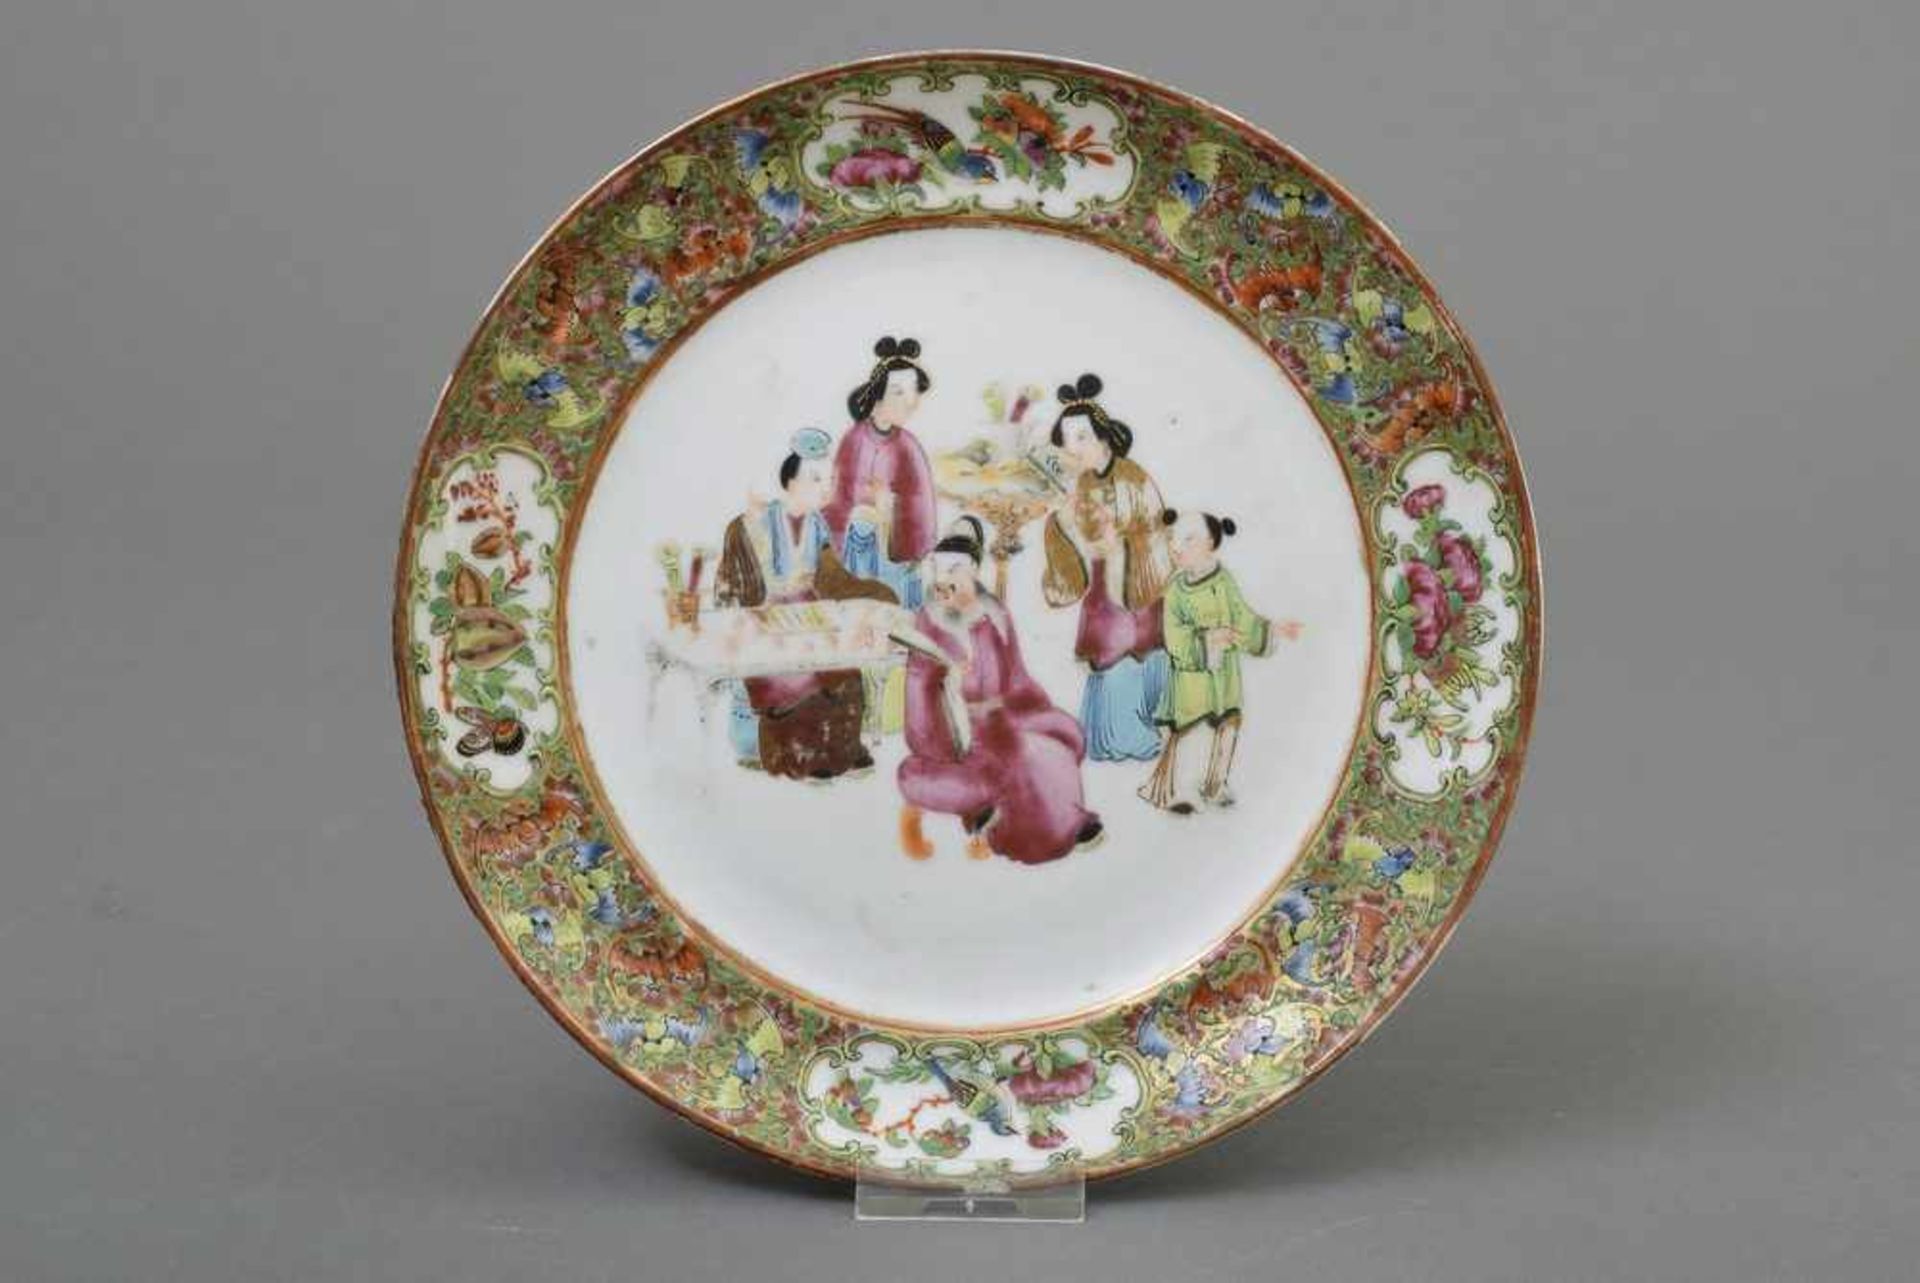 Chinesischer Teller mit Kanton Malerei, Ø 21cm, Riss am Rand/etw. ber. Chinese plate with canton